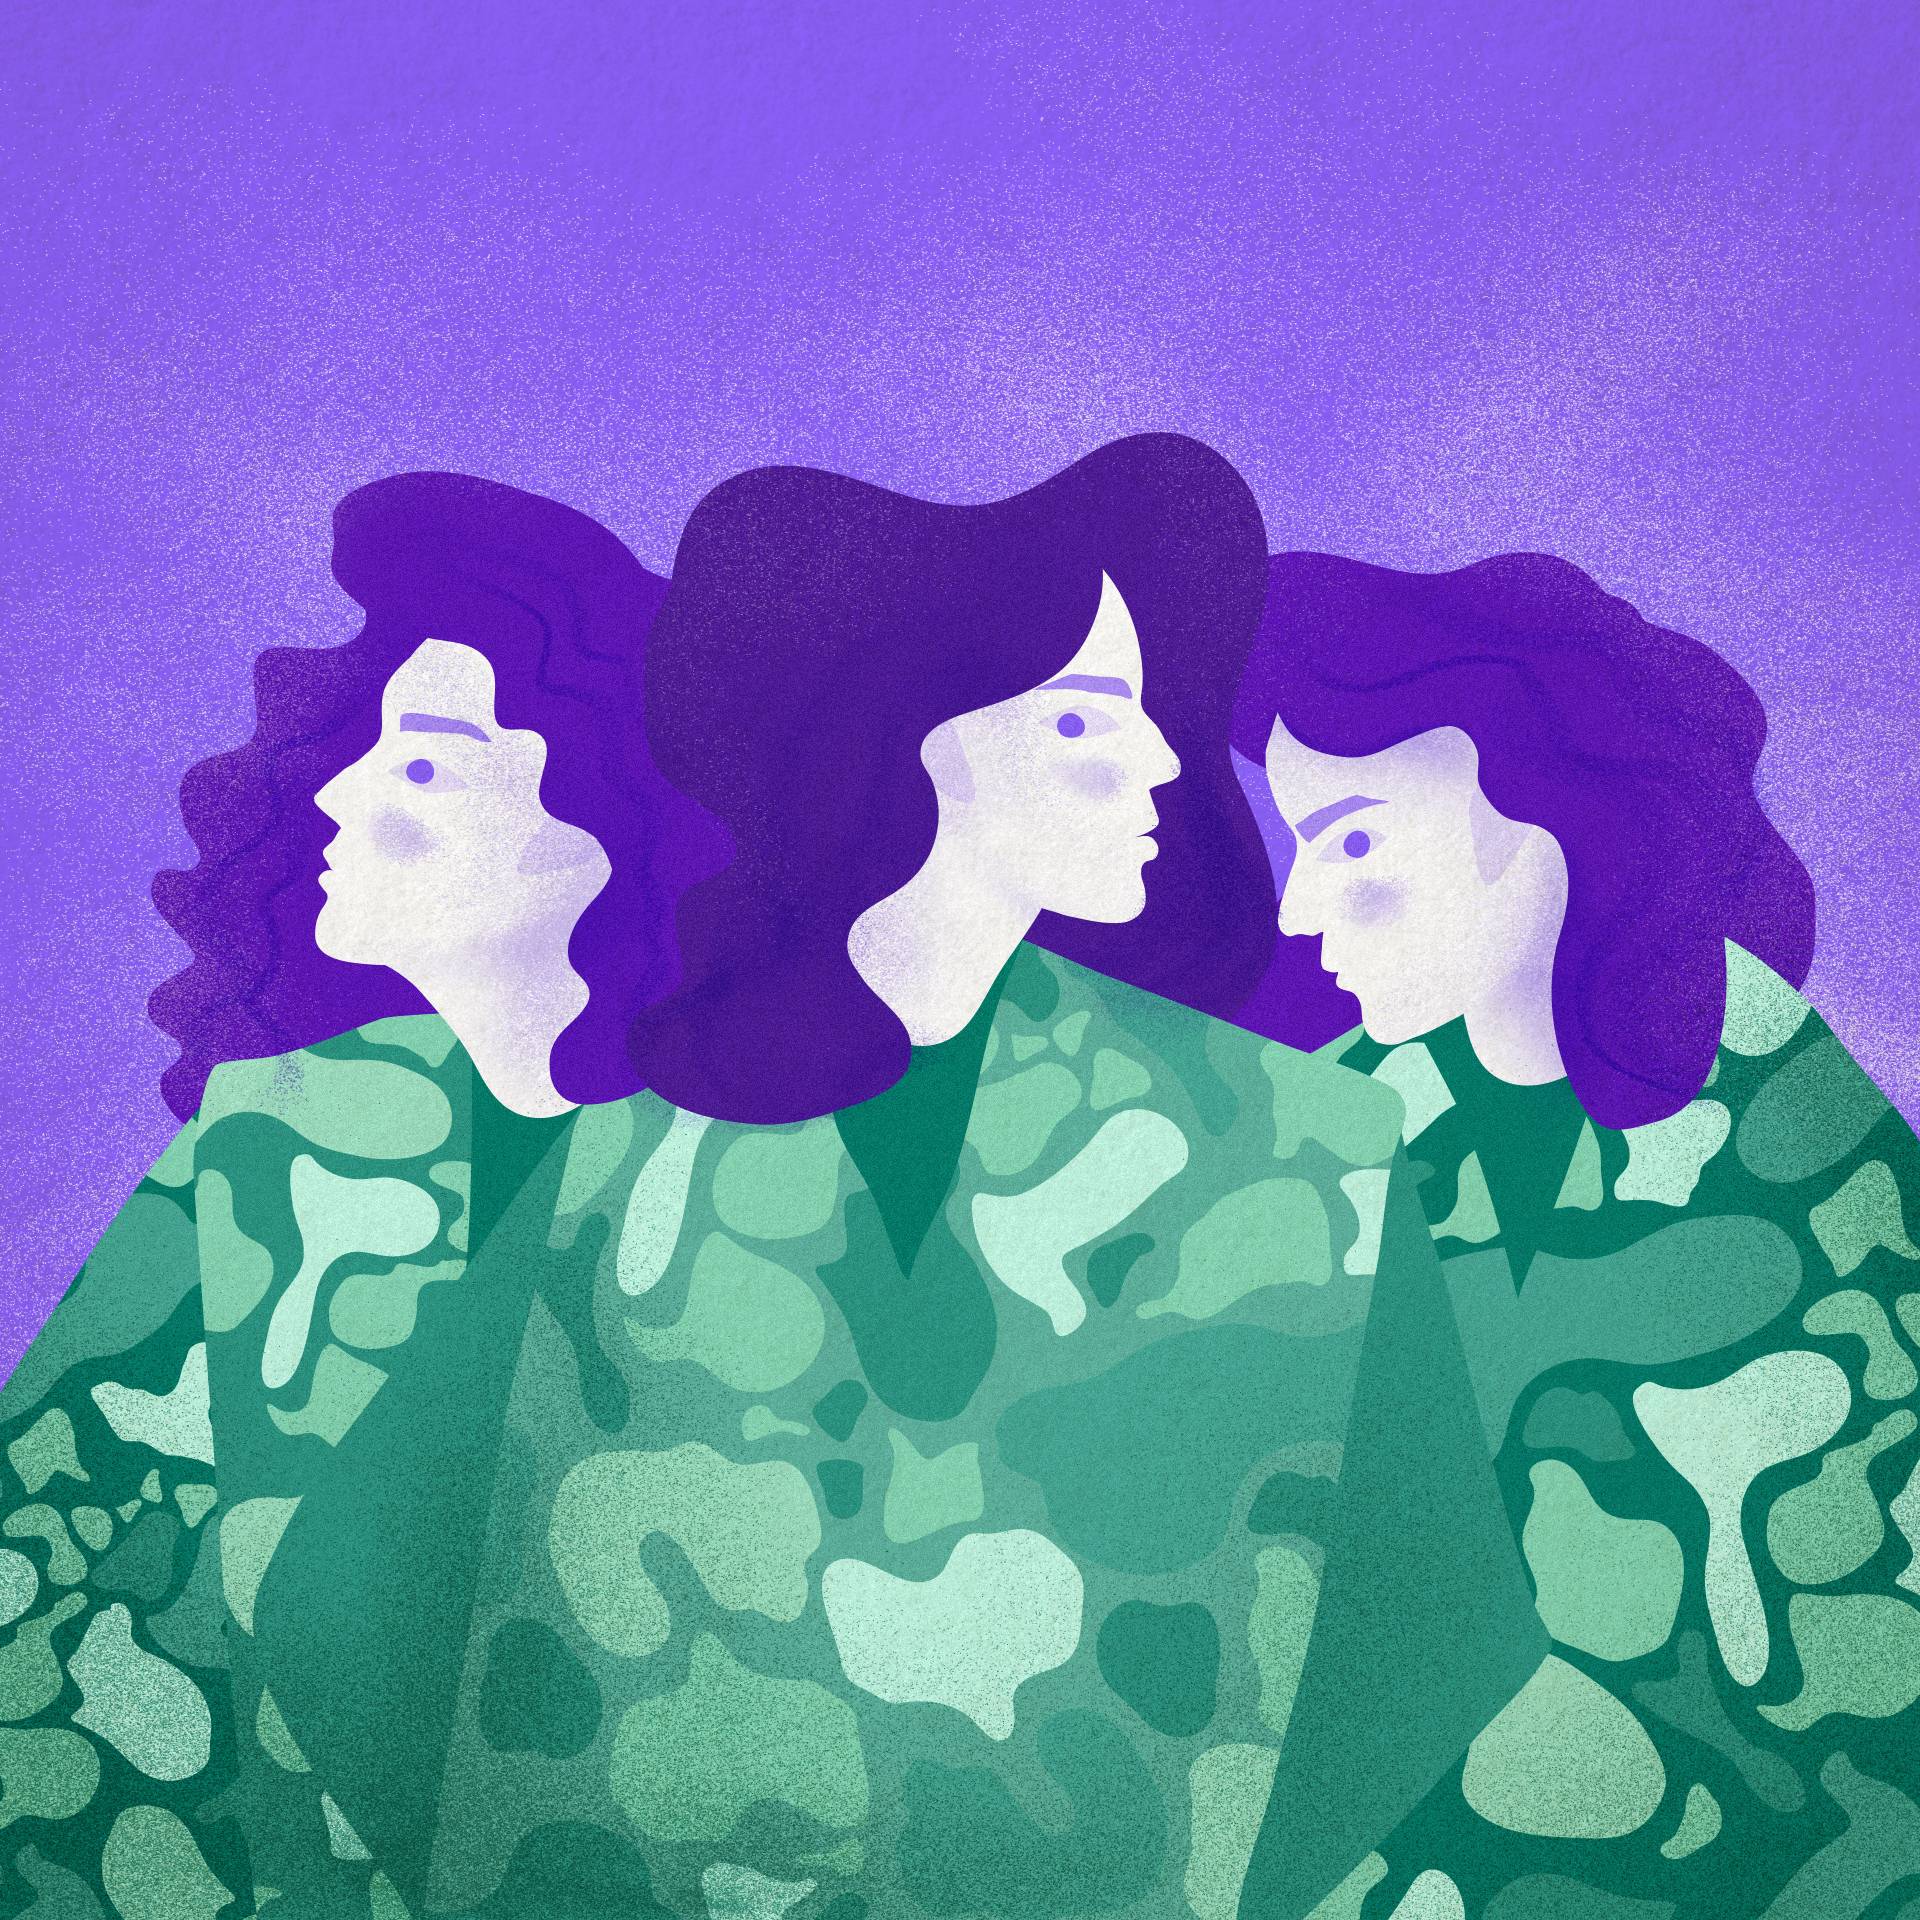 Ilustracja, przedstawiająca trzy sylwetki kobiece w wojskowych uniformach..